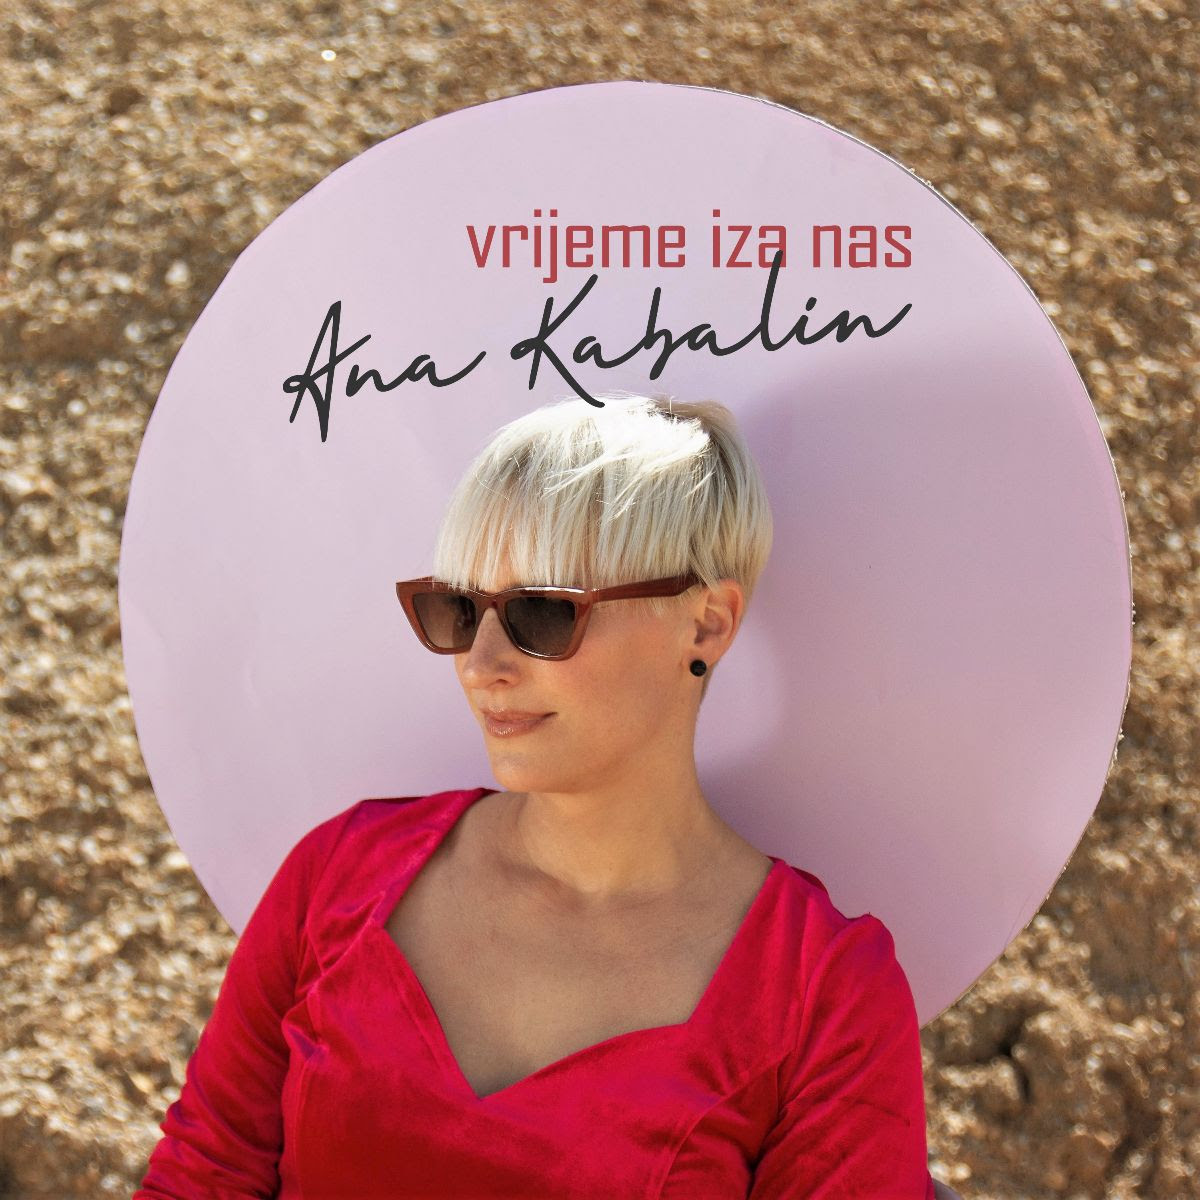 Ana Kabalin, poznata riječka pjevačica, predstavlja pjesmu "Vrijeme iza nas"